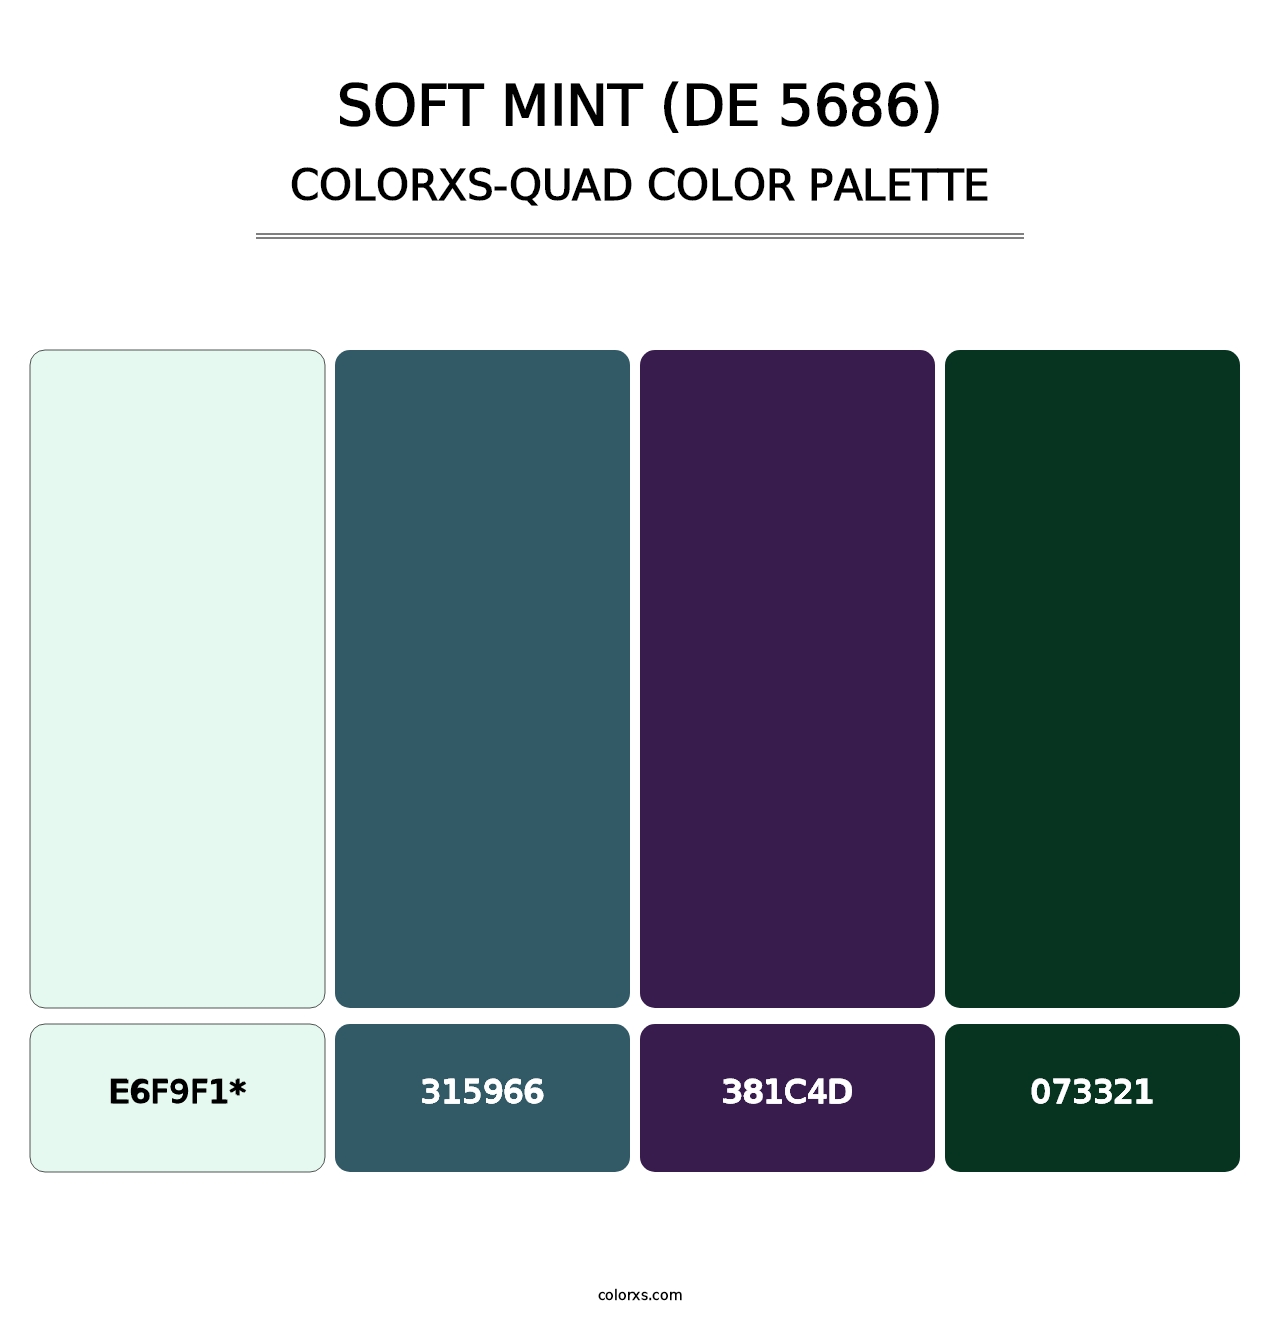 Soft Mint (DE 5686) - Colorxs Quad Palette